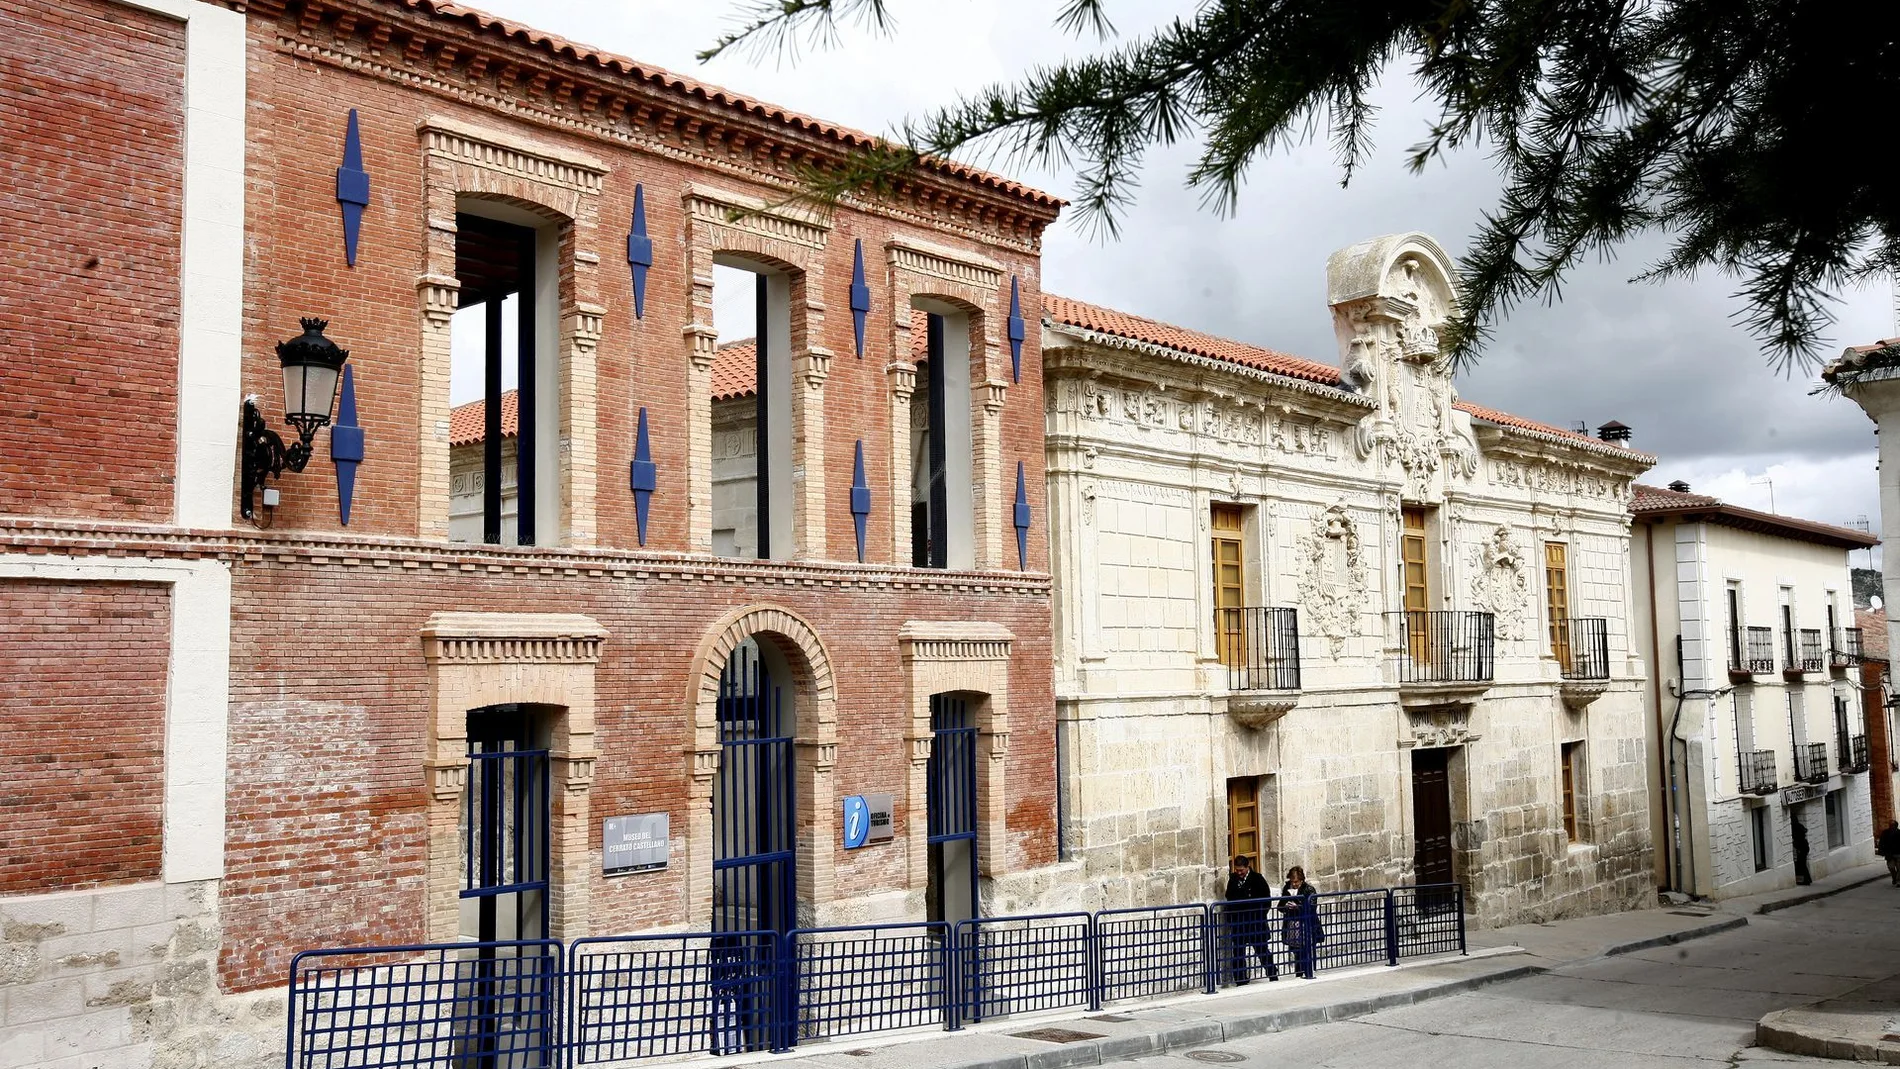 La Diputación renueva la colaboración con el ayuntamiento de Baltanás por importe de 30.000 euros para la apertura, mantenimiento y difusión del Museo del Cerrato de Baltanás